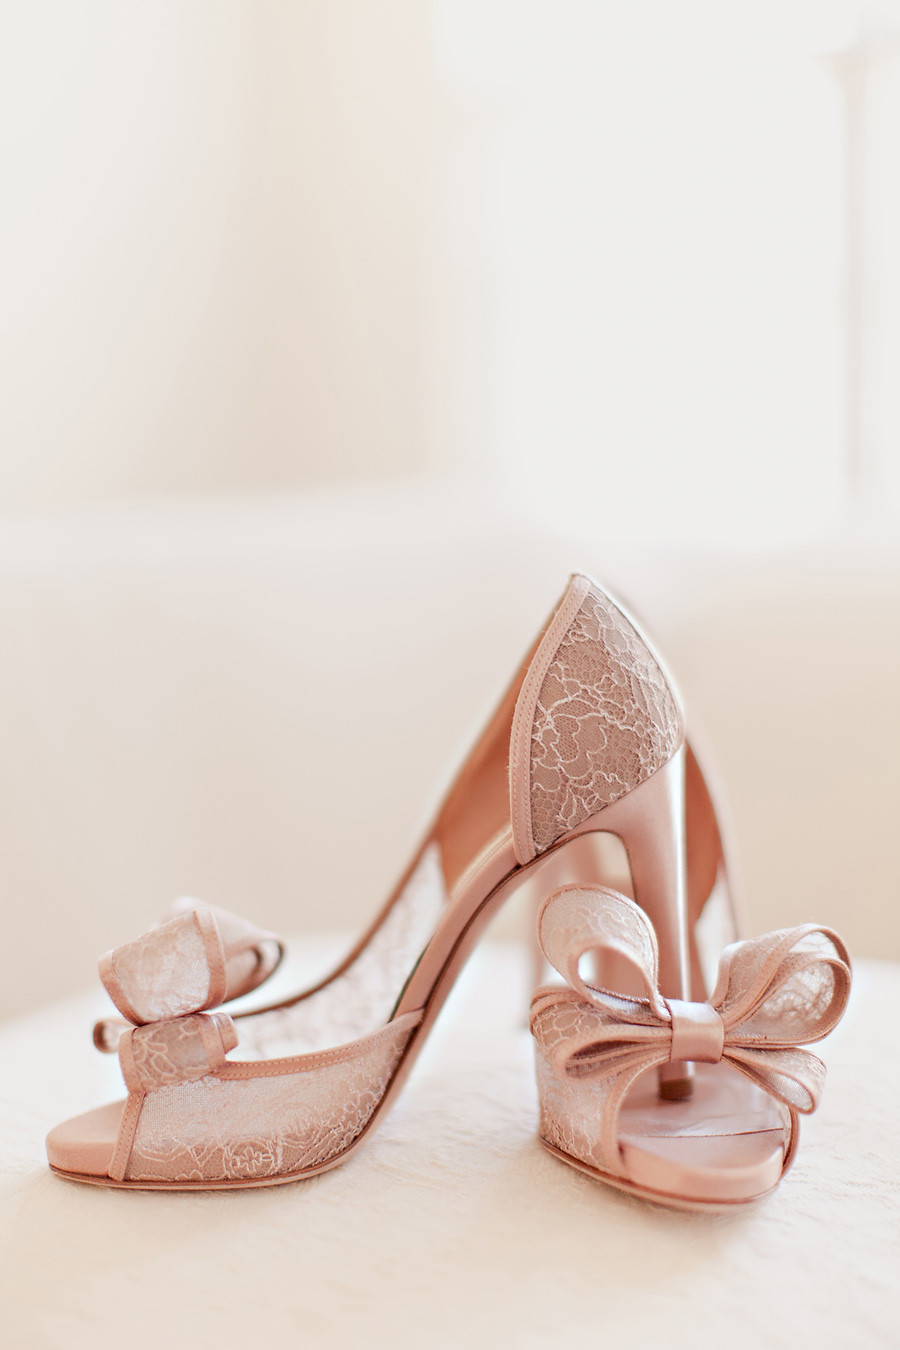 Blush Colored Wedding Shoes
 Blush Colored Lace Bridal Shoes Elizabeth Anne Designs